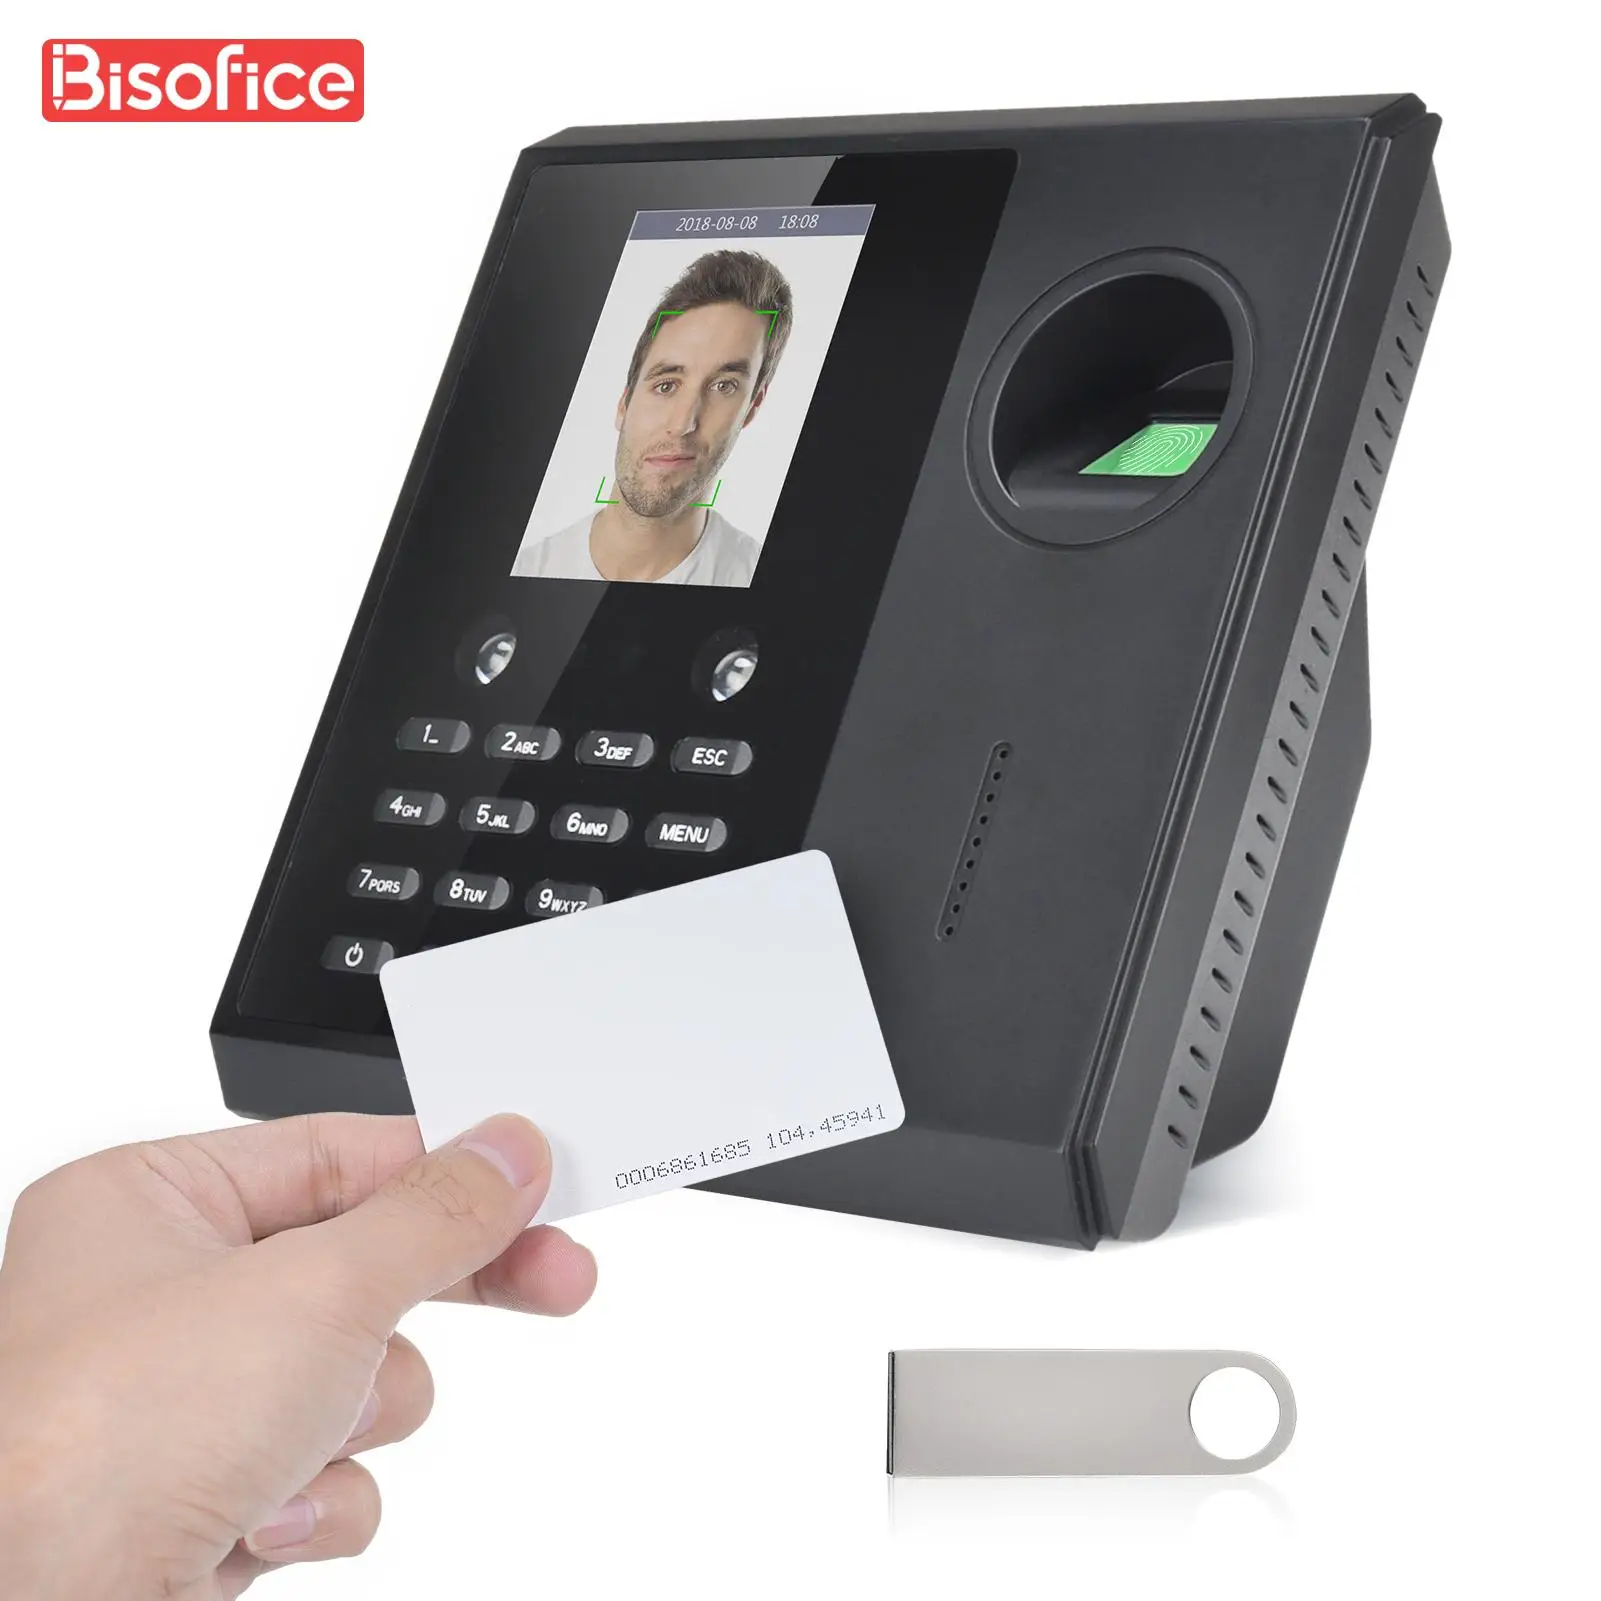 Биометрическая машина для учета времени и времени для сотрудников, поддержка идентификационных карт со сканером отпечатков пальцев и паролем, распознавание лица, быстрое распознавание